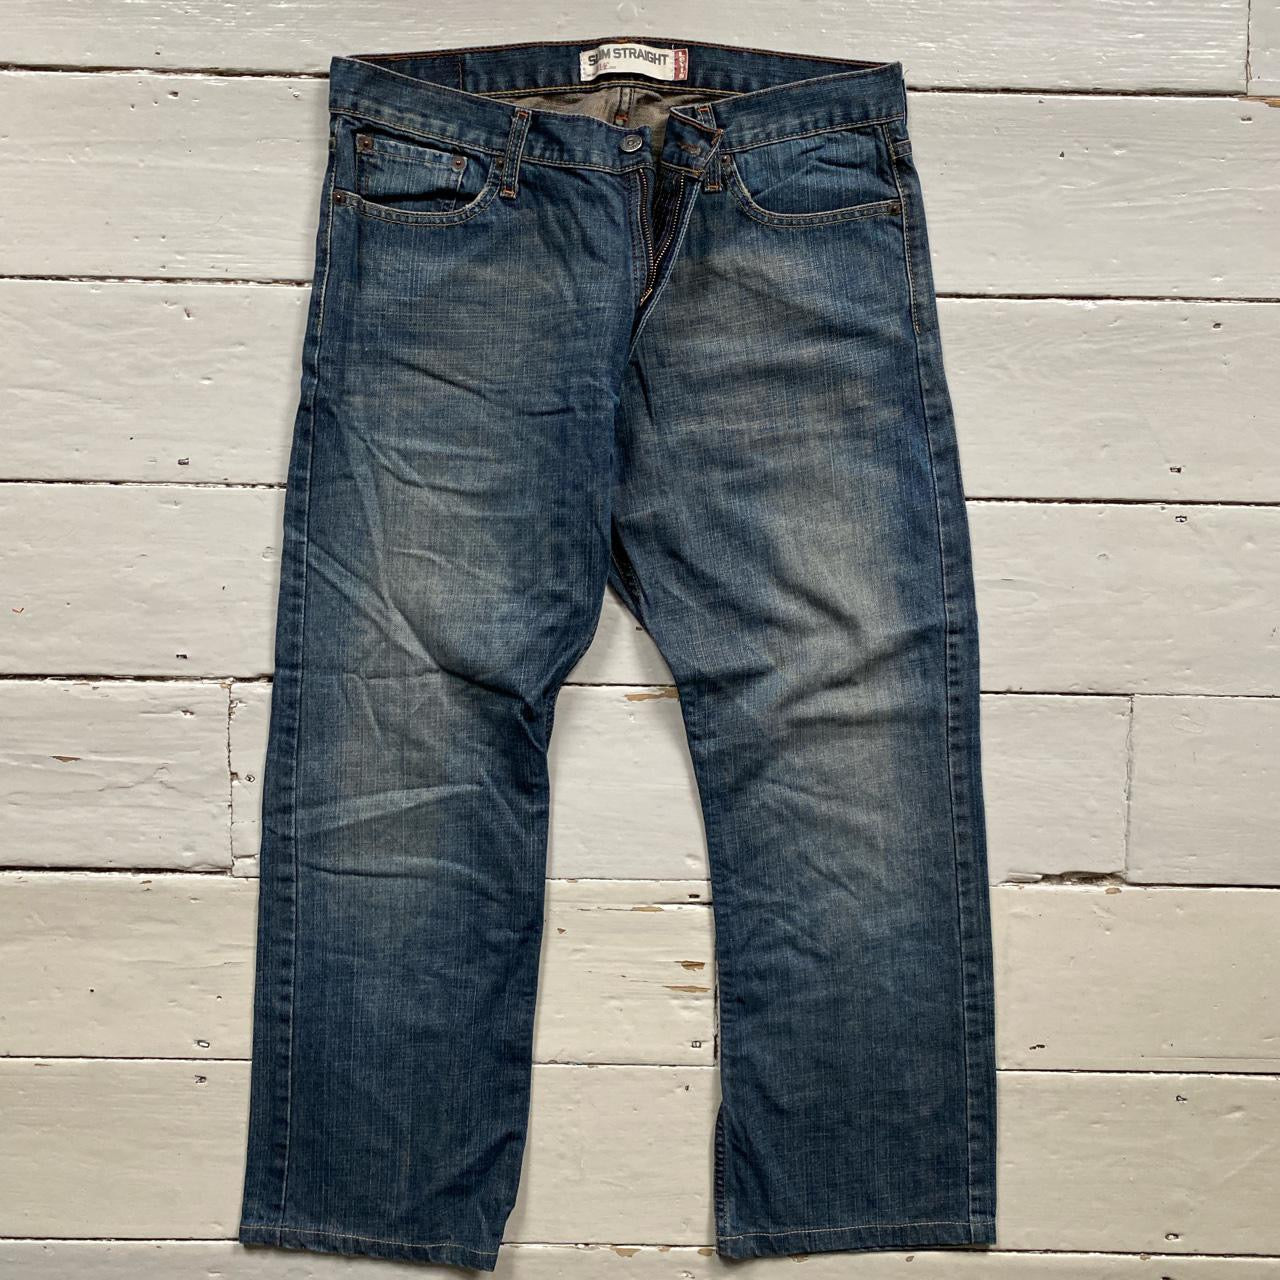 Levis 514 Stonewash Blue Jeans (36/28)